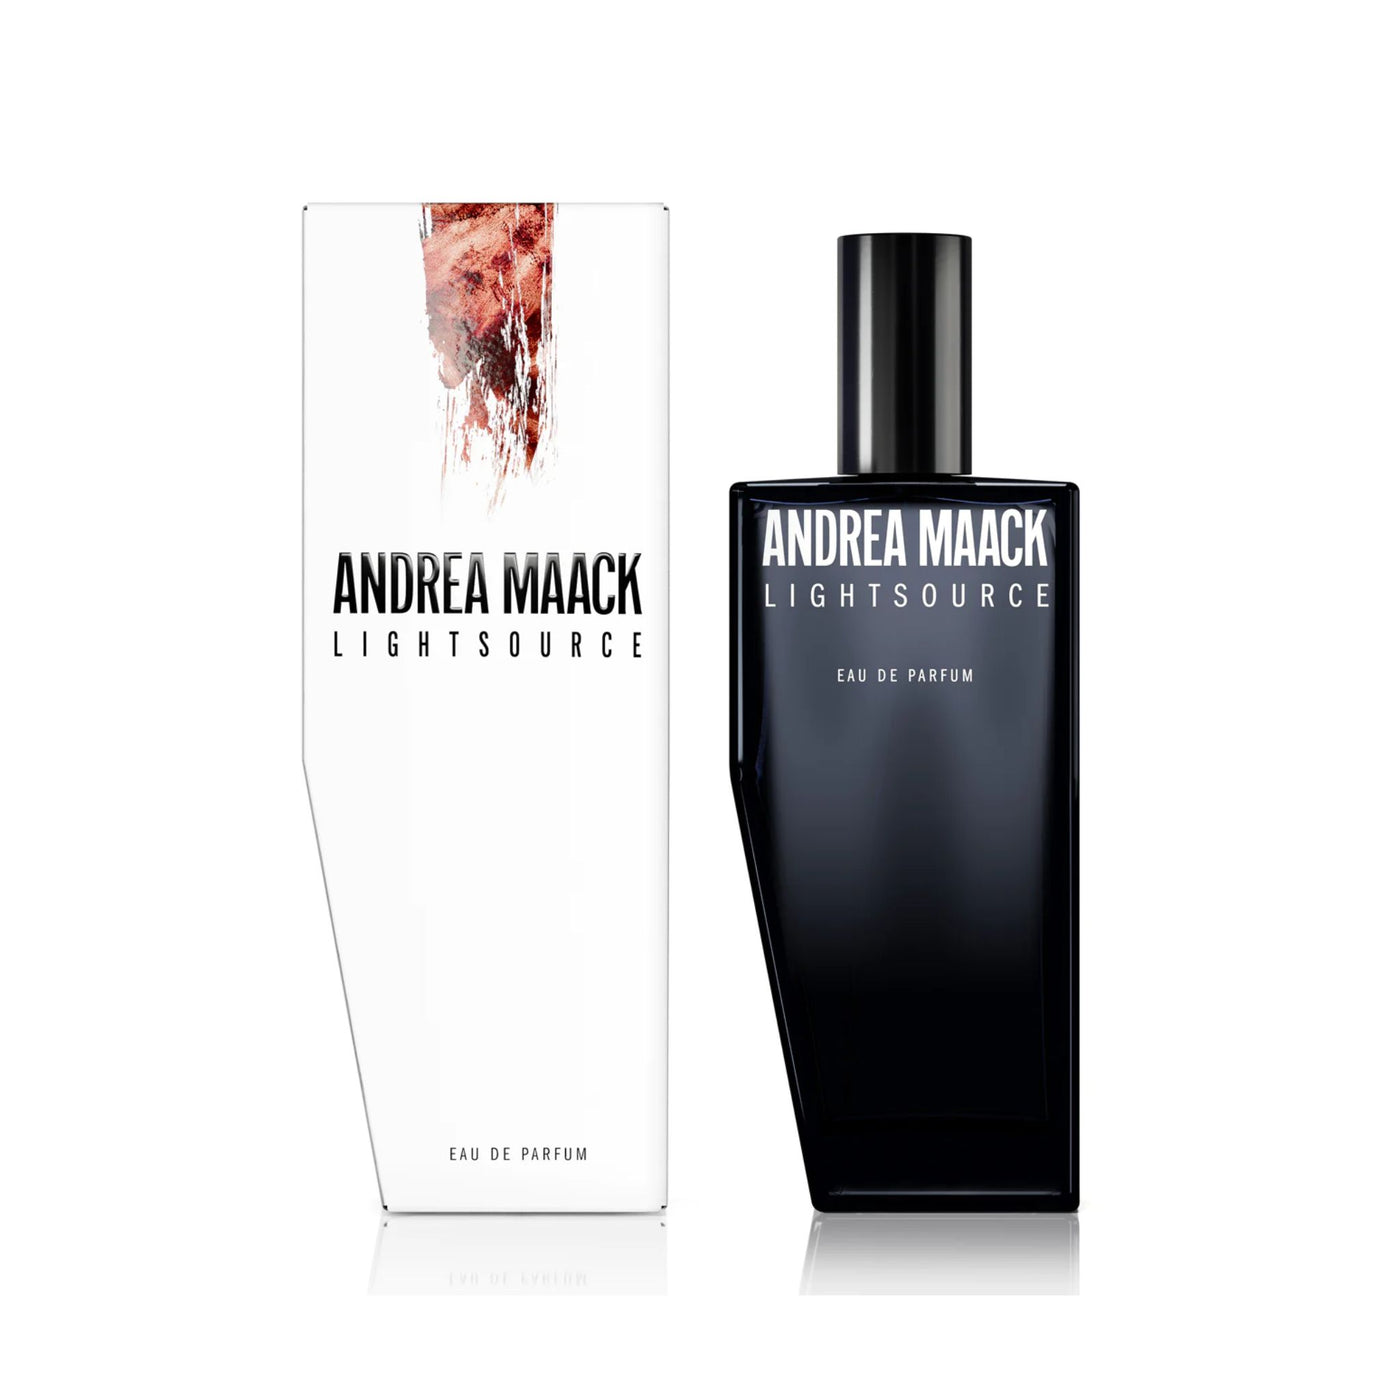 Lightsource Andrea Maack Perfume